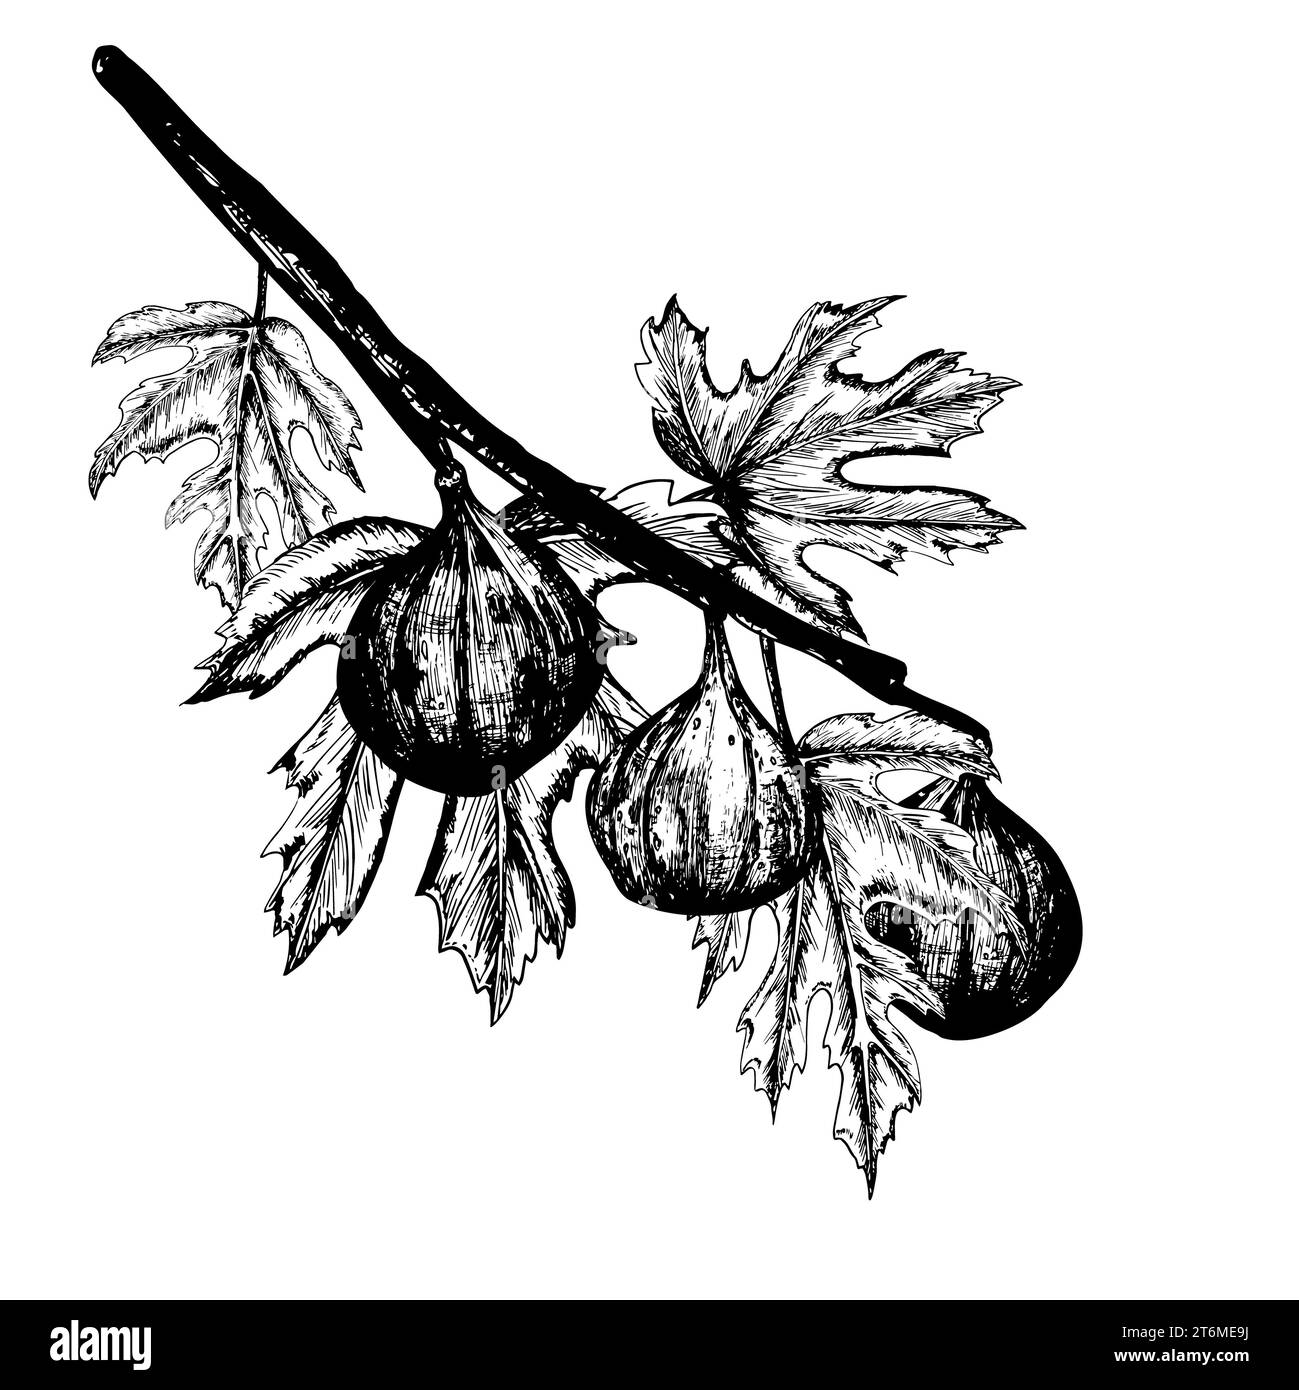 Illustrazione con inchiostro bianco e nero disegnato a mano. Un ramo di fichi e foglie freschi e maturi. Illustrazione vettoriale Foto Stock